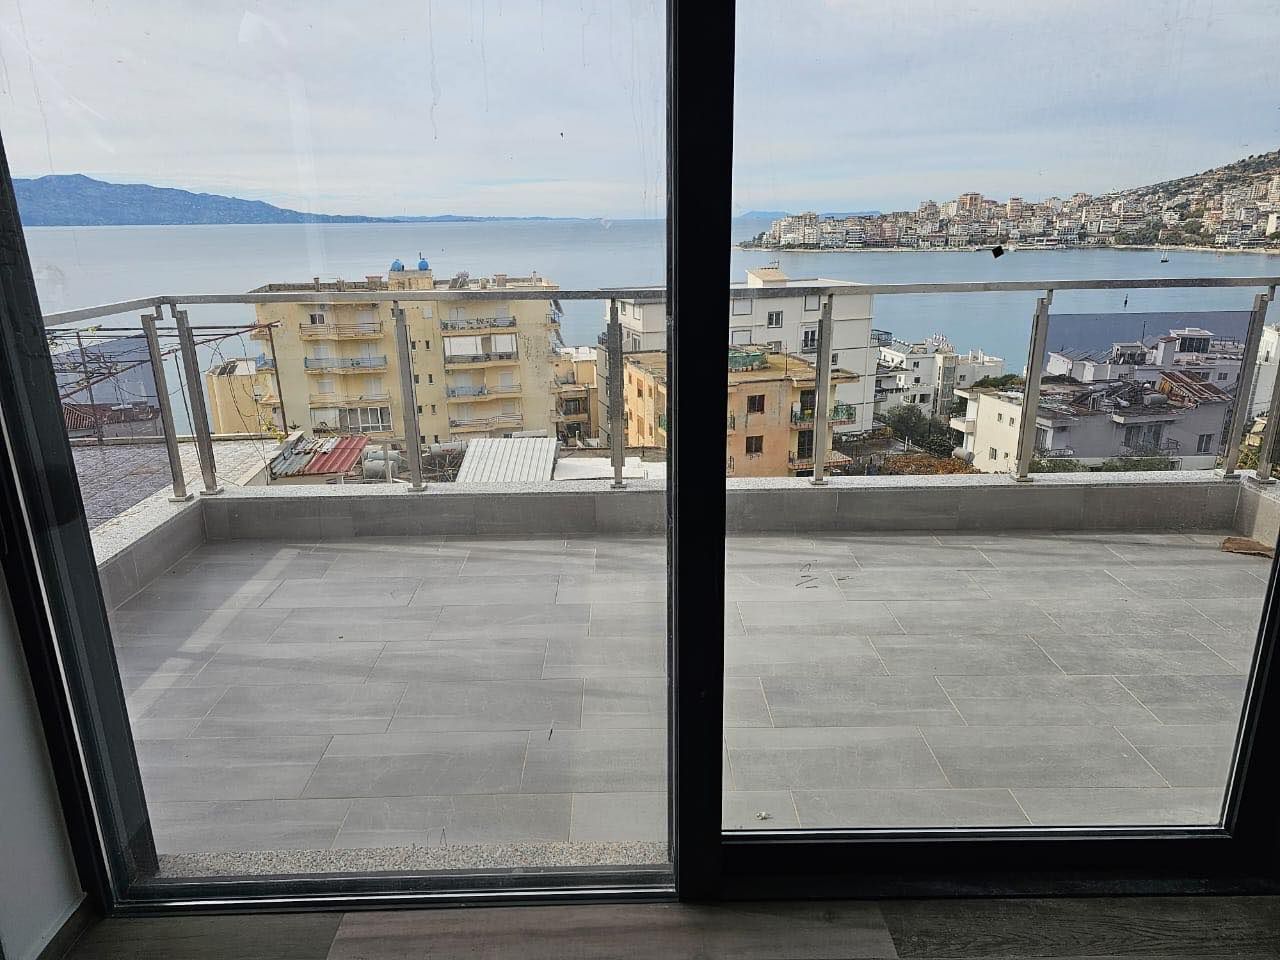 Mieszkanie Z Widokiem Na Morze Na Sprzedaż W Sarandzie W Albanii